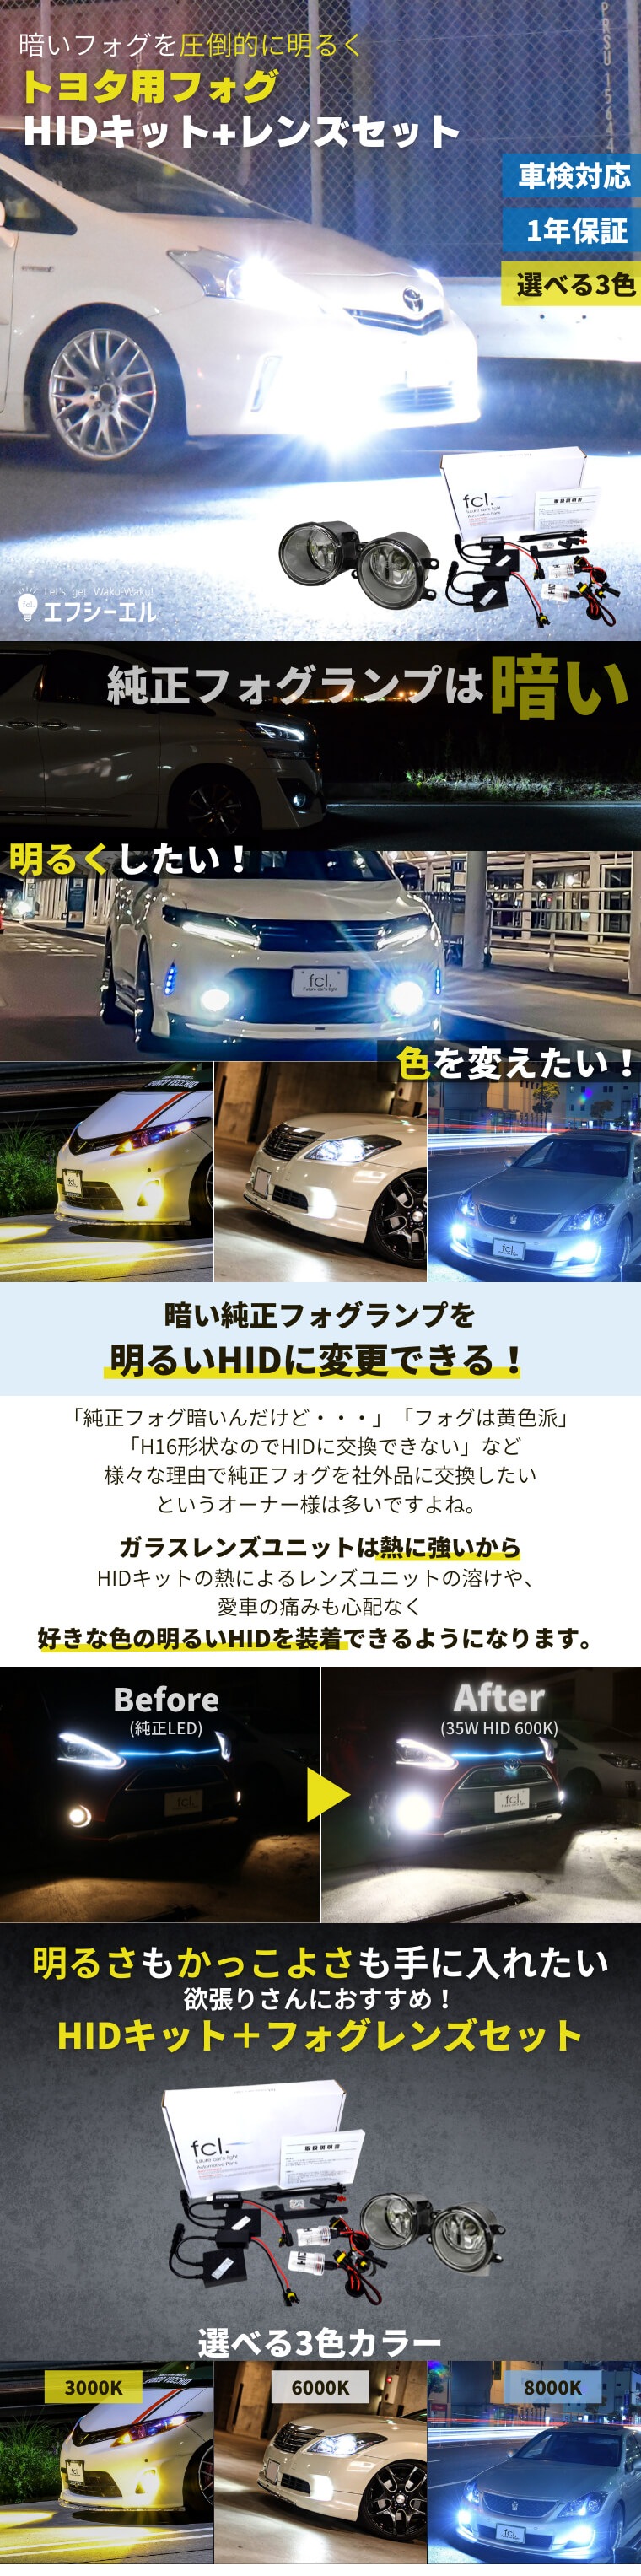 ガラスレンズユニット HIDキットセット【公式通販】fcl. 車のHID専門店